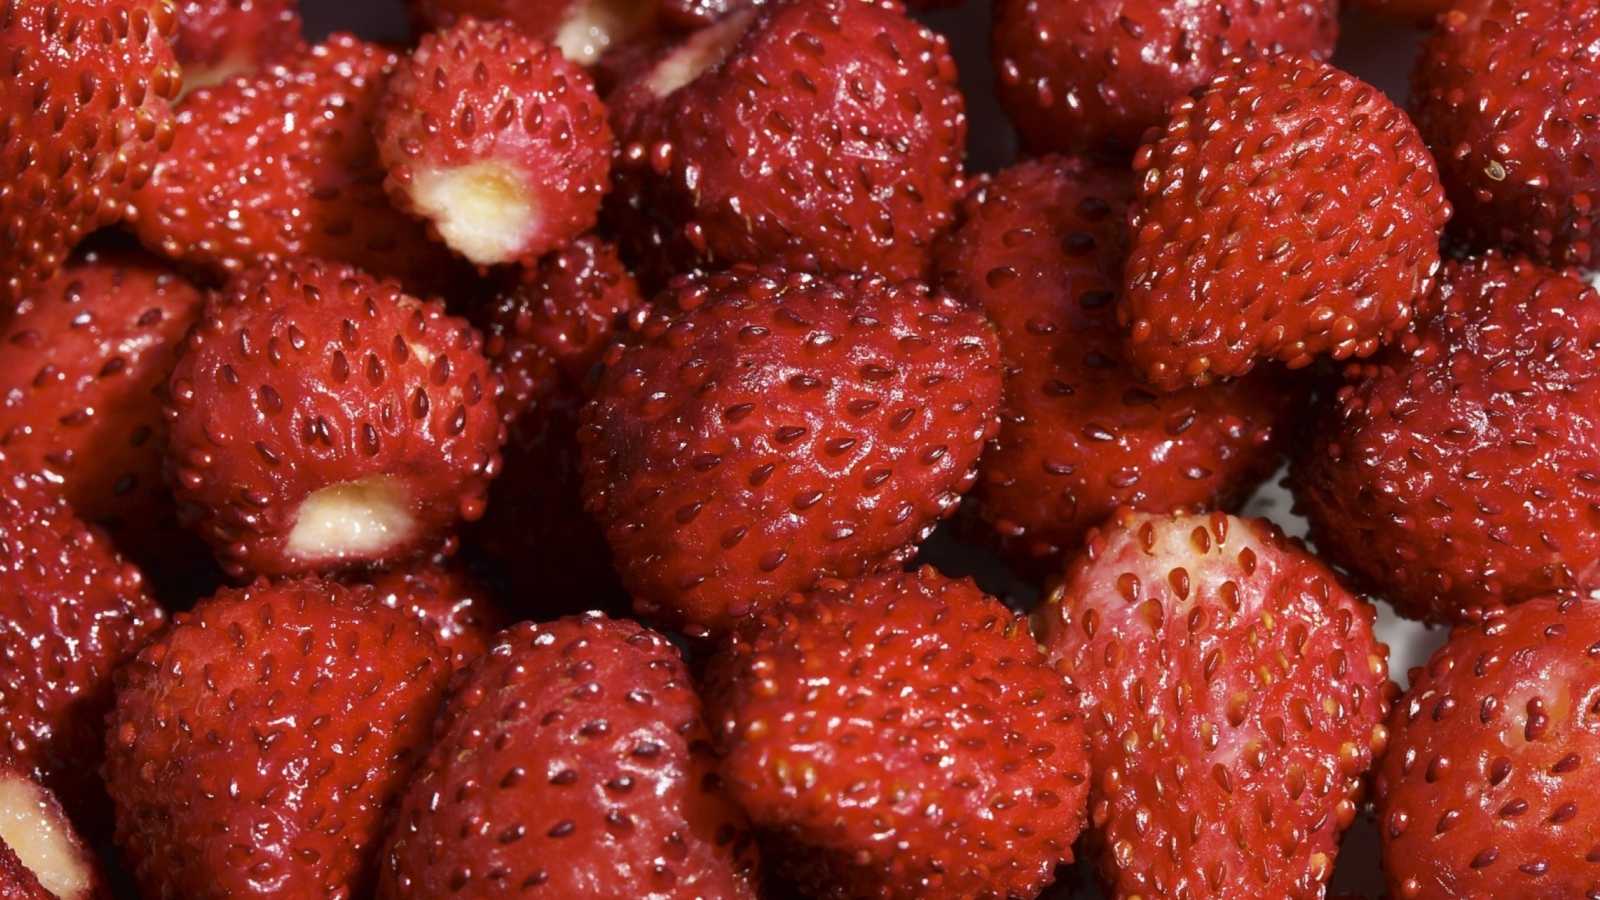 Strawberries screenshot #1 1600x900